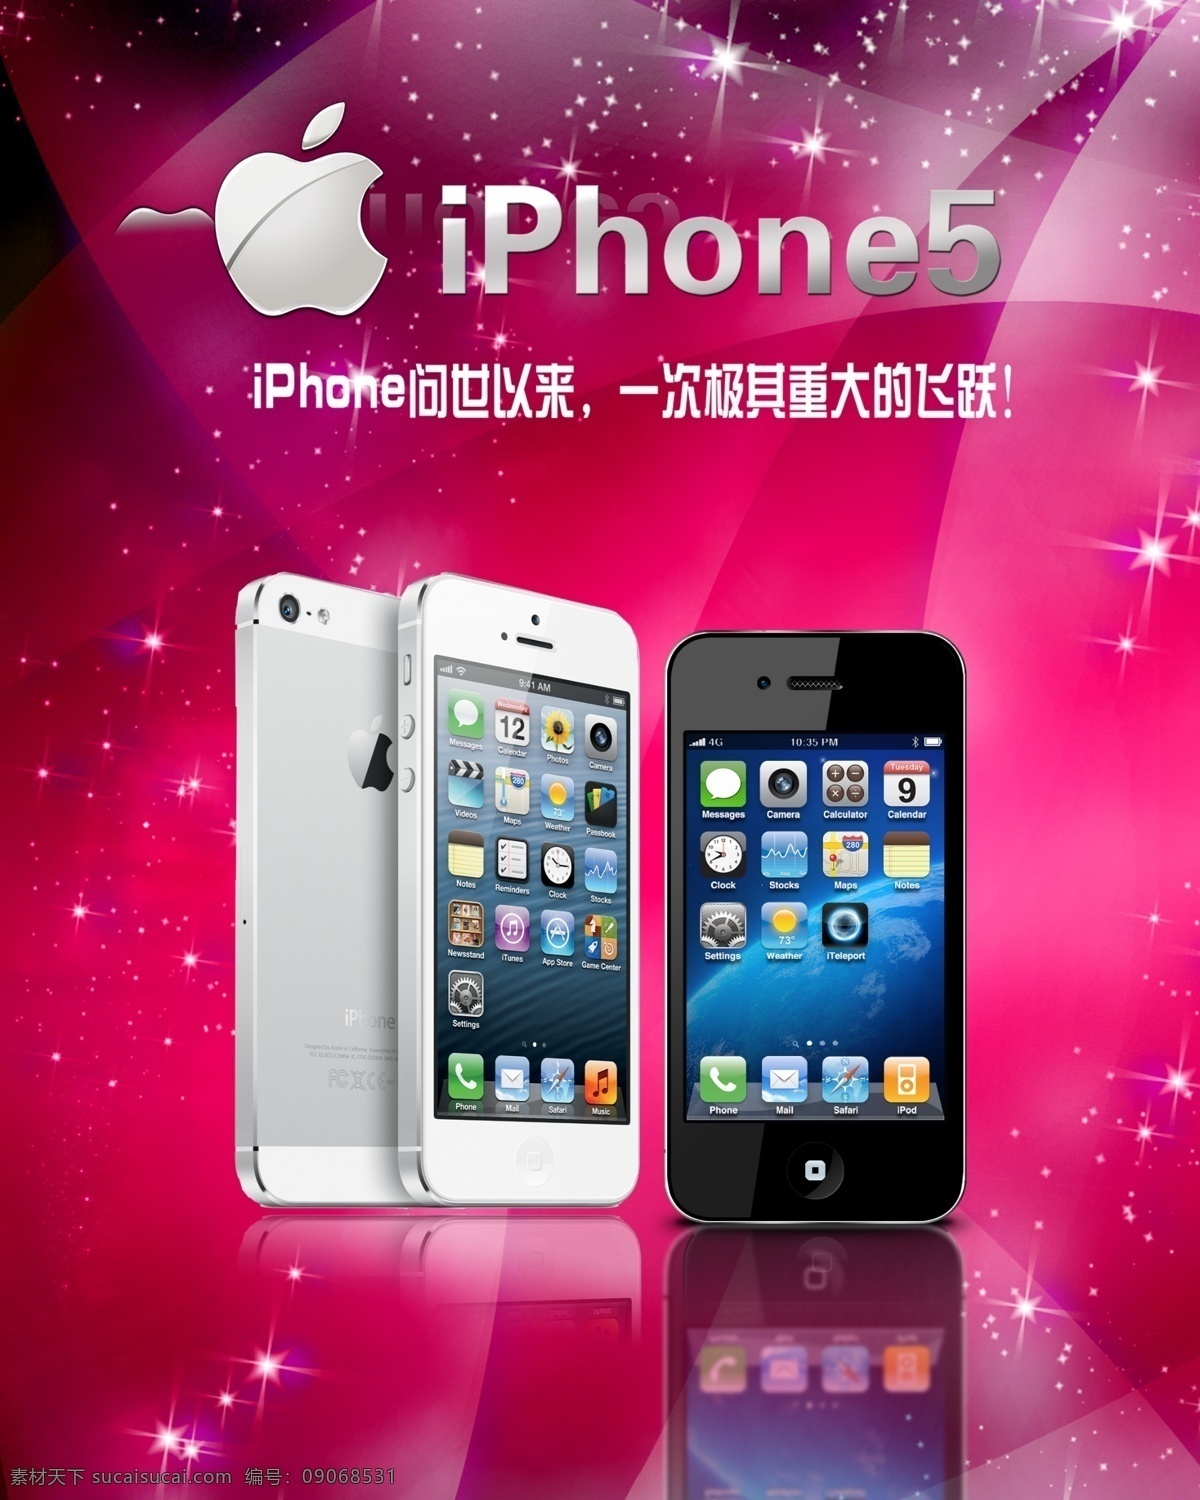 苹果5 苹果 iphone5 新款苹果 模型 苹果手机 苹果五代 代 智能手机 ios7 苹果5s 苹果5s海报 苹果5s广告 宣传海报 海报展架 红色